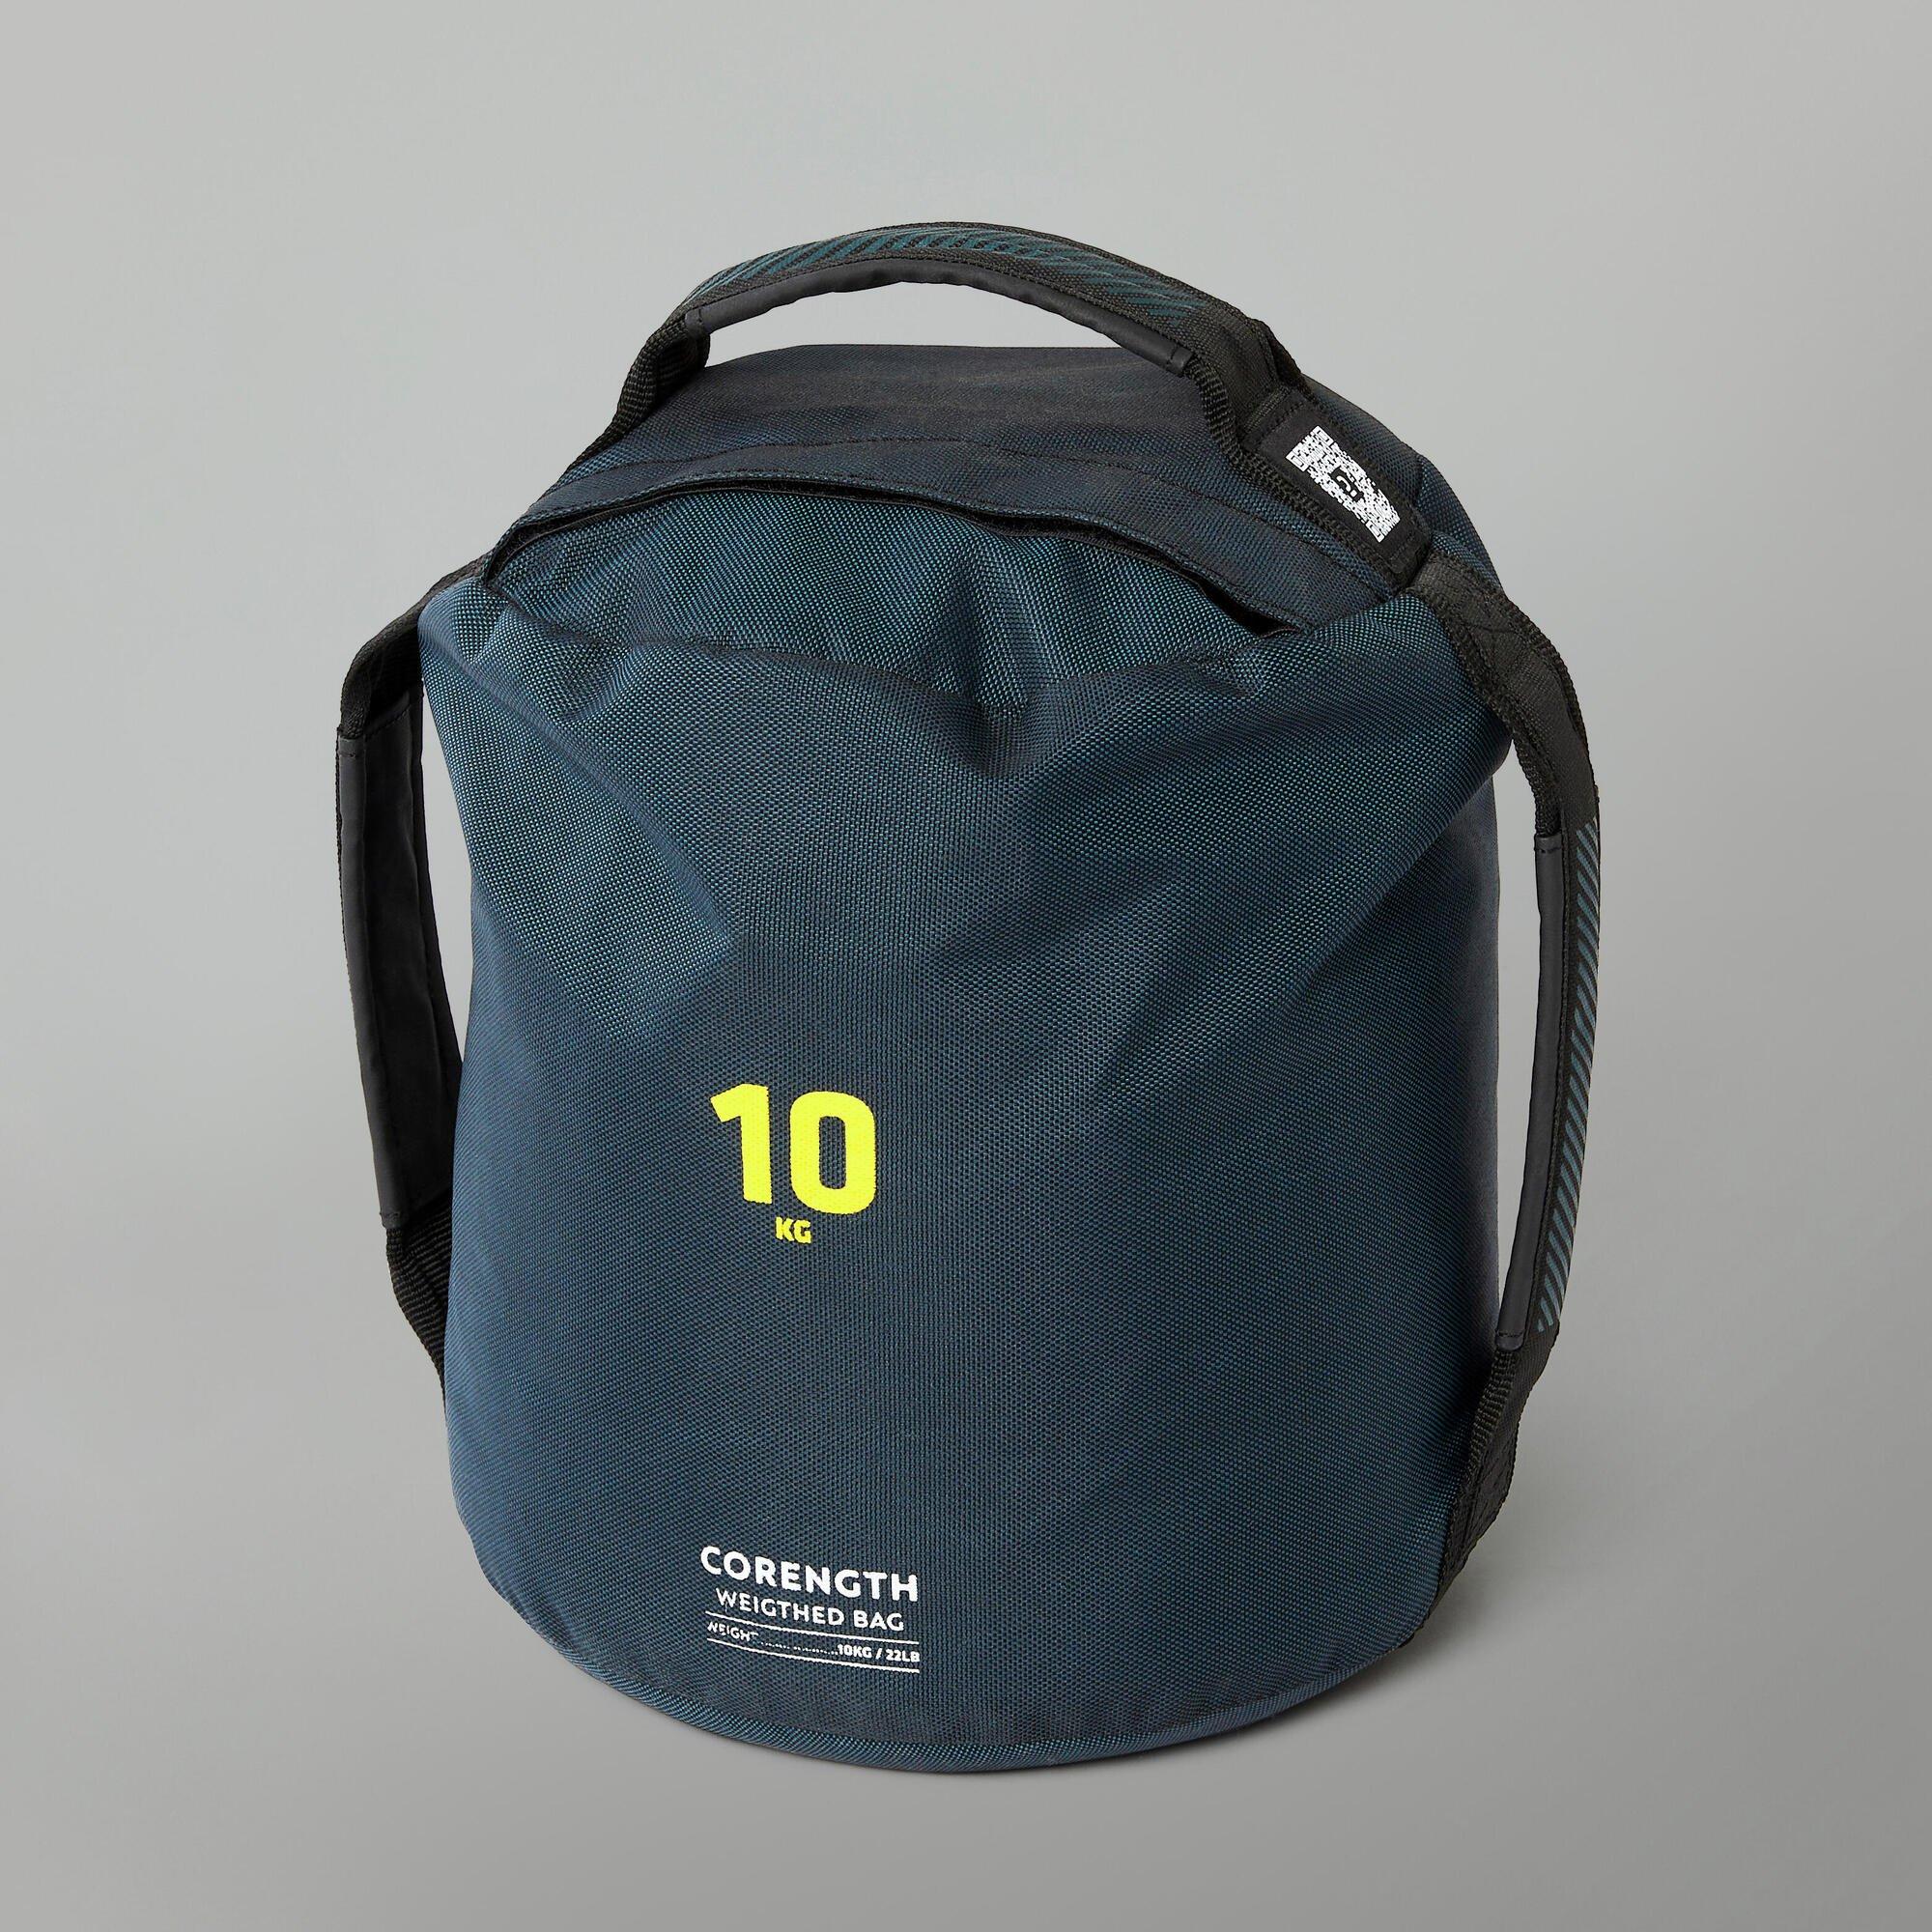 Утяжеленная сумка Decathlon/мягкая гиря 10 кг Corength, мультиколор скакалка с утяжелителями demix черный